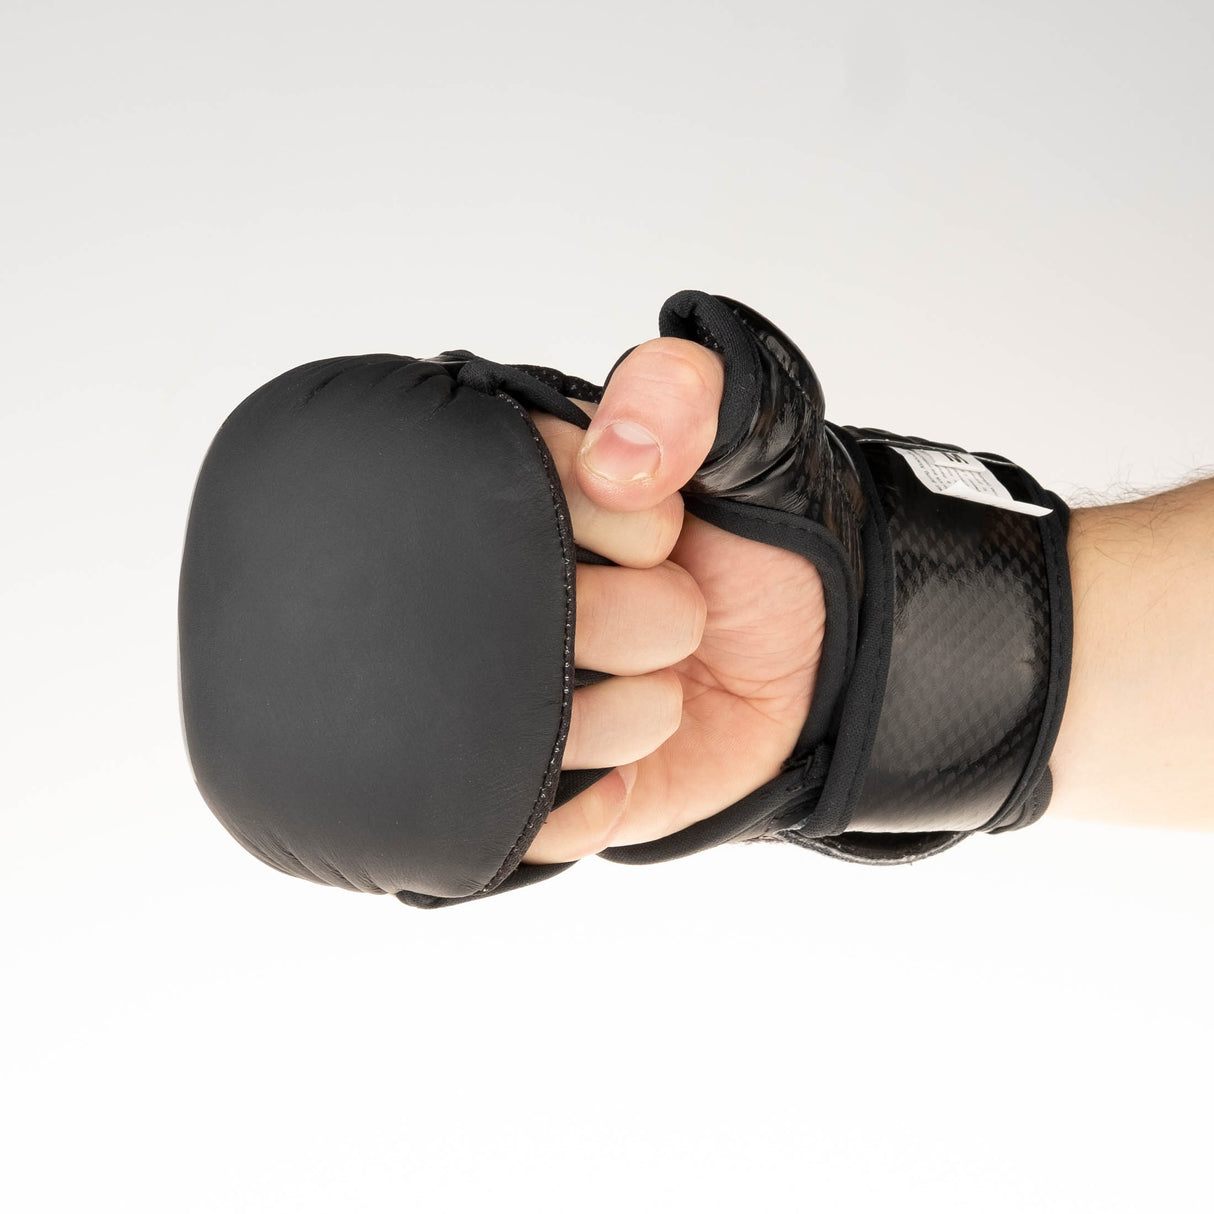 Gants d'entraînement Fighter MMA - noir, FMG-001BB